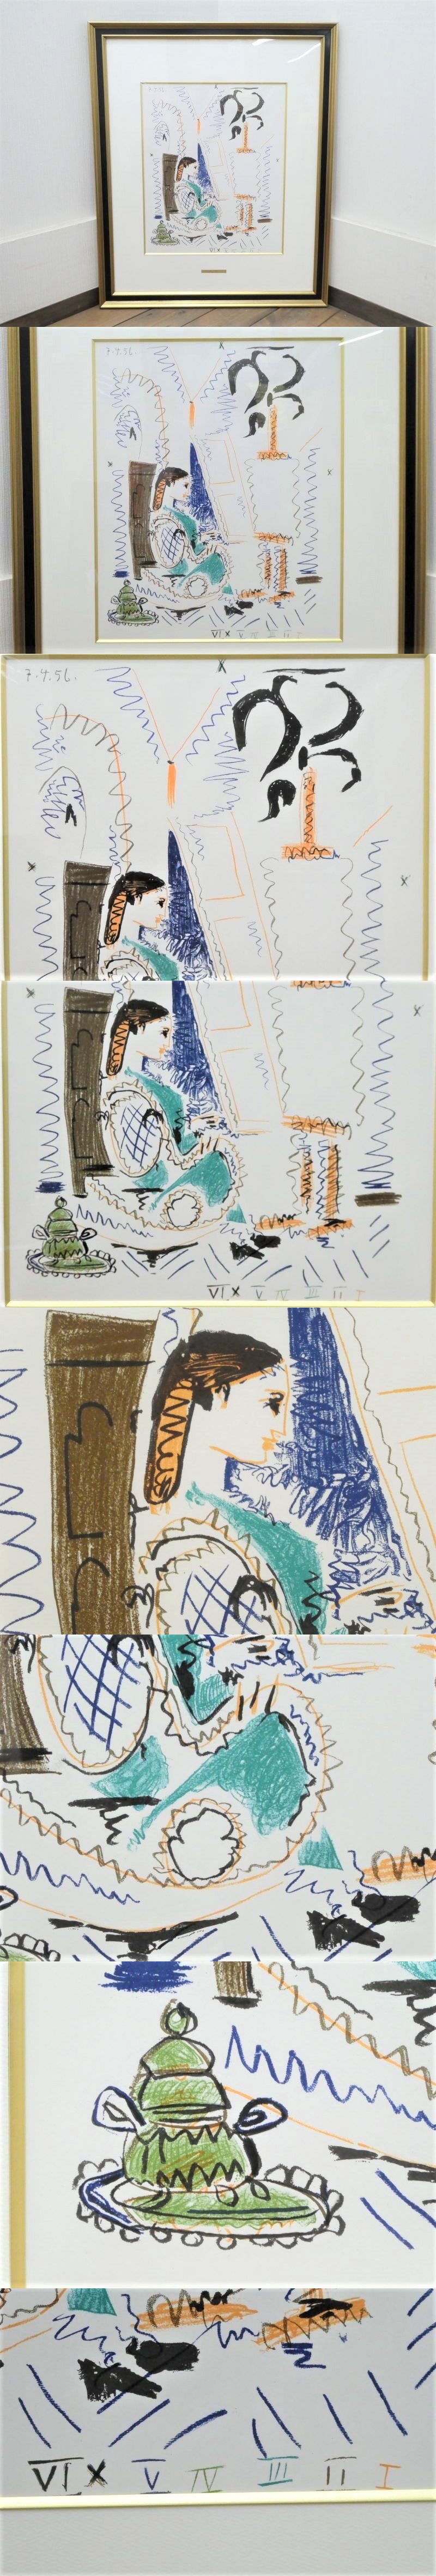 割引特売直G00993★パブロ・ピカソ (Pablo Picasso)『カンヌのアトリエ』リトグラフ アートプリント / 模写 ポスターフレーム 女性 額入 絵画 石版画、リトグラフ